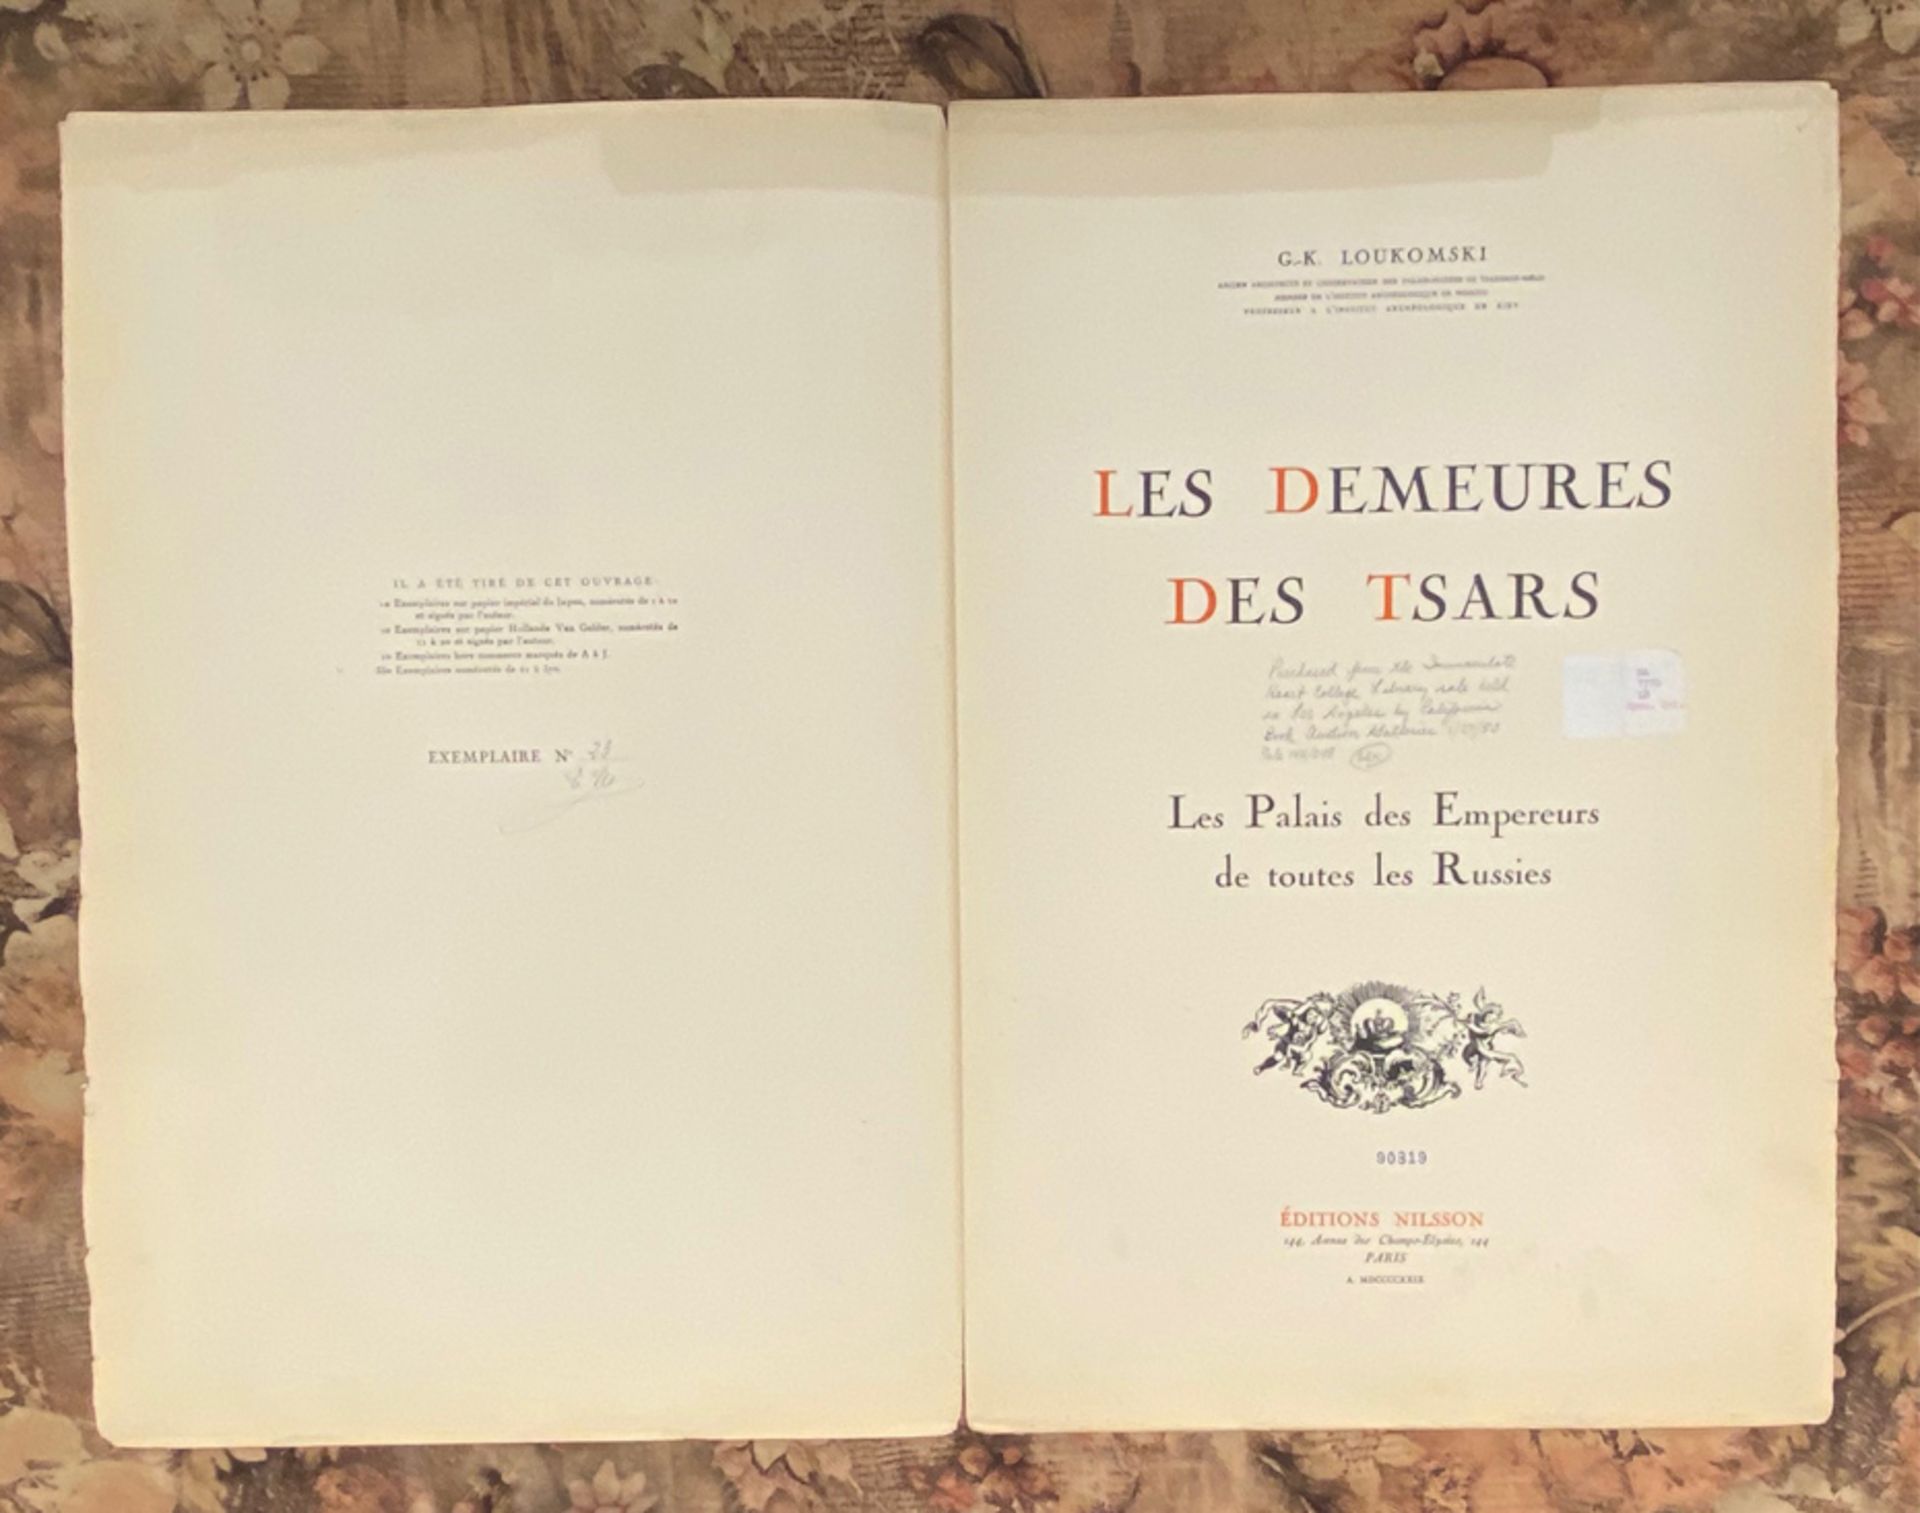 LOUKOMSKI, G.K., LES DEMEURES DES TSARS, PARIS 1929 - Image 6 of 17